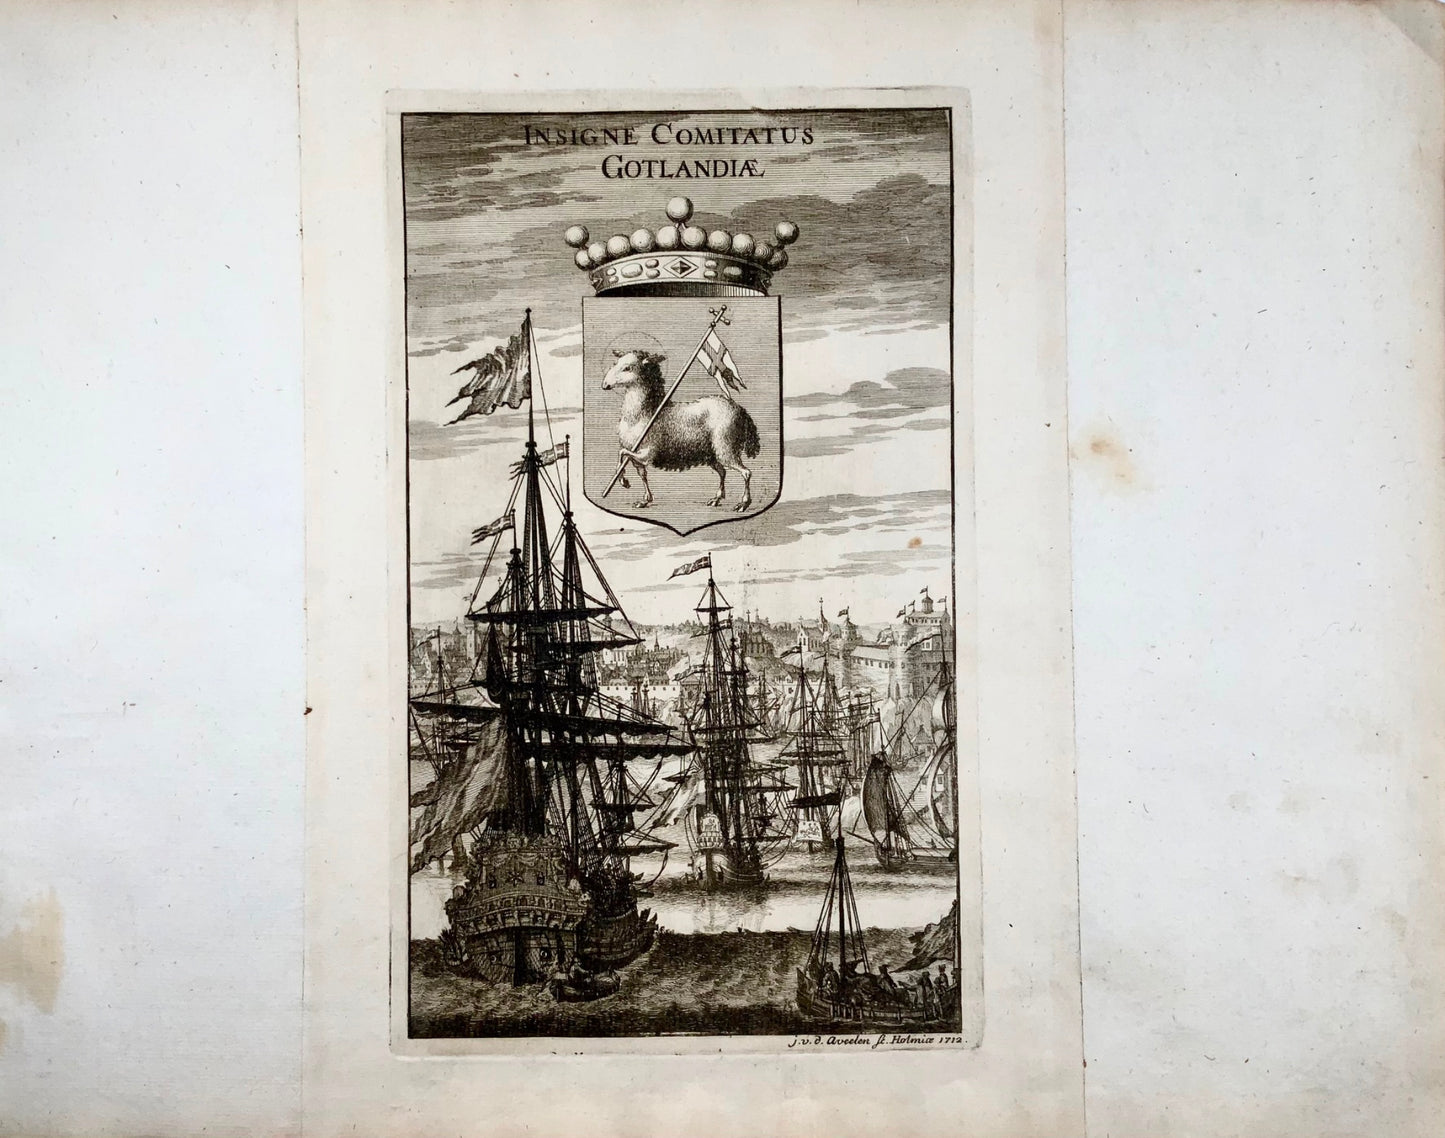 1712 Aveelen, navires dans le vieux port de Visby, armoiries de Gotland, maritime